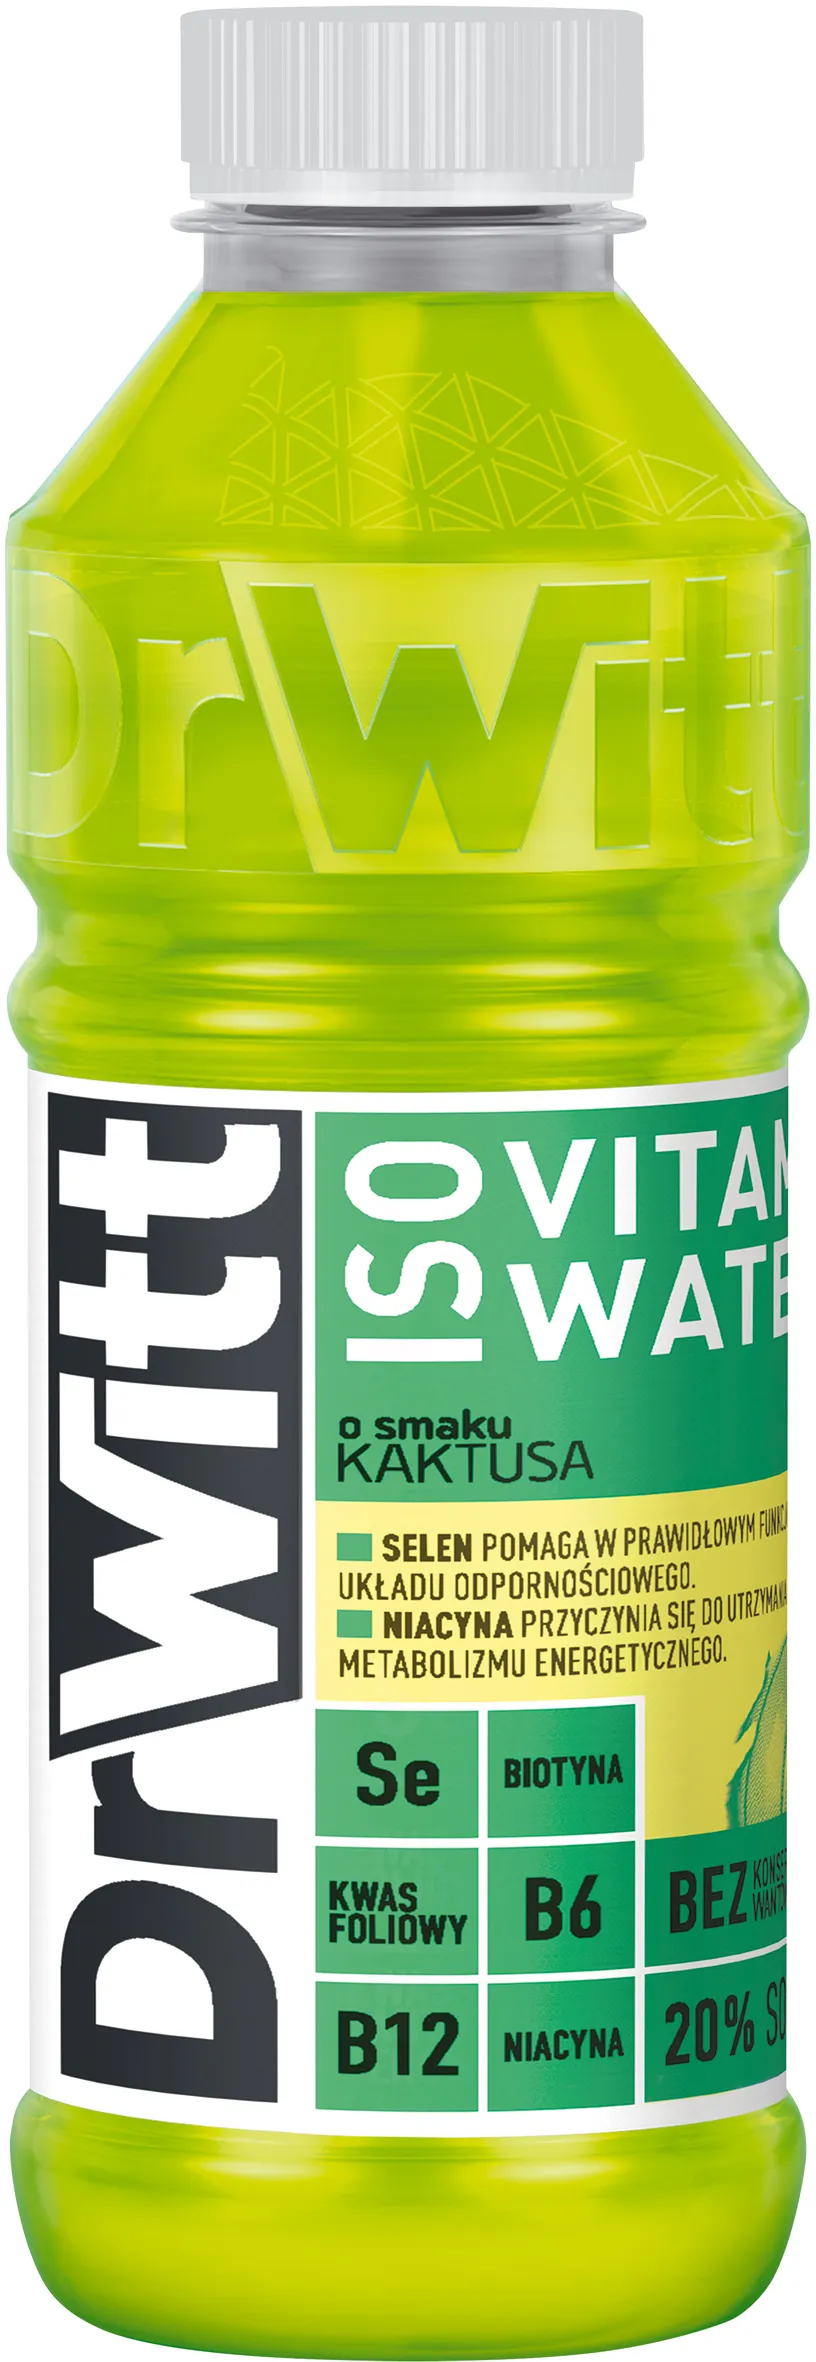 DrWitt ISO Vitamin Water napój izotoniczny, kaktus-jabłko, 550 ml. Data ważności 31.05.2024